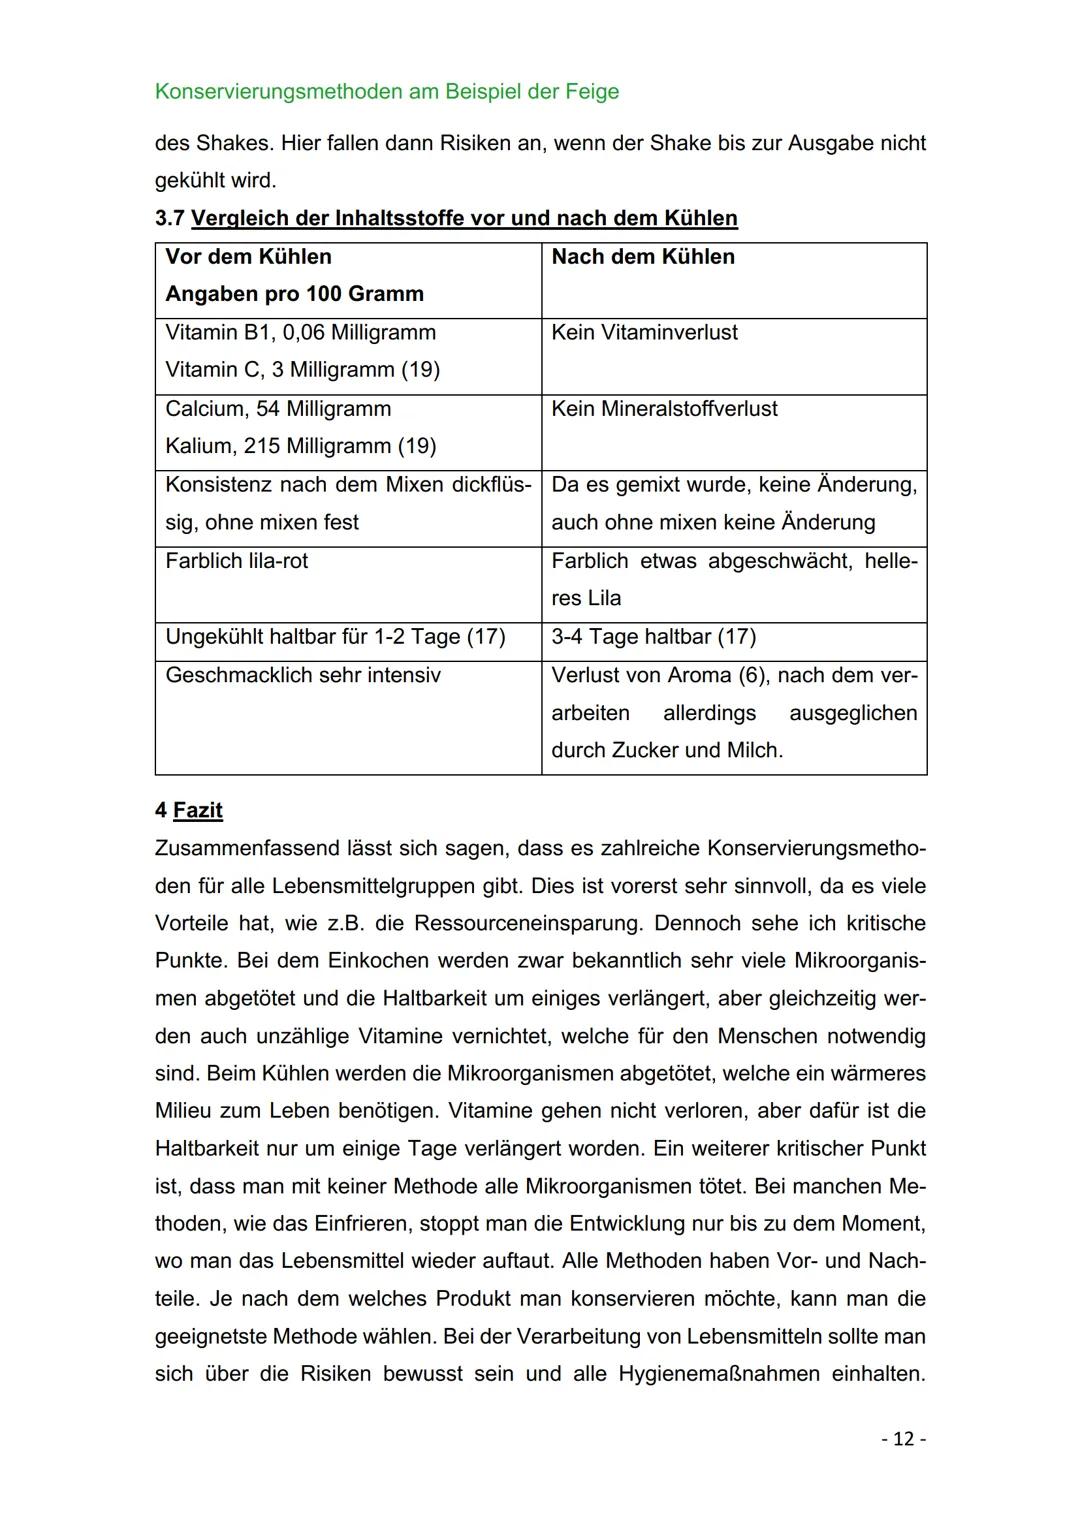 BBS 1 Uelzen
Berufliches Gymnasium - Gesundheit und Soziales
Schwerpunkt Ökotrophologie
Facharbeit zum Thema: Konservierungsmethoden am Beis